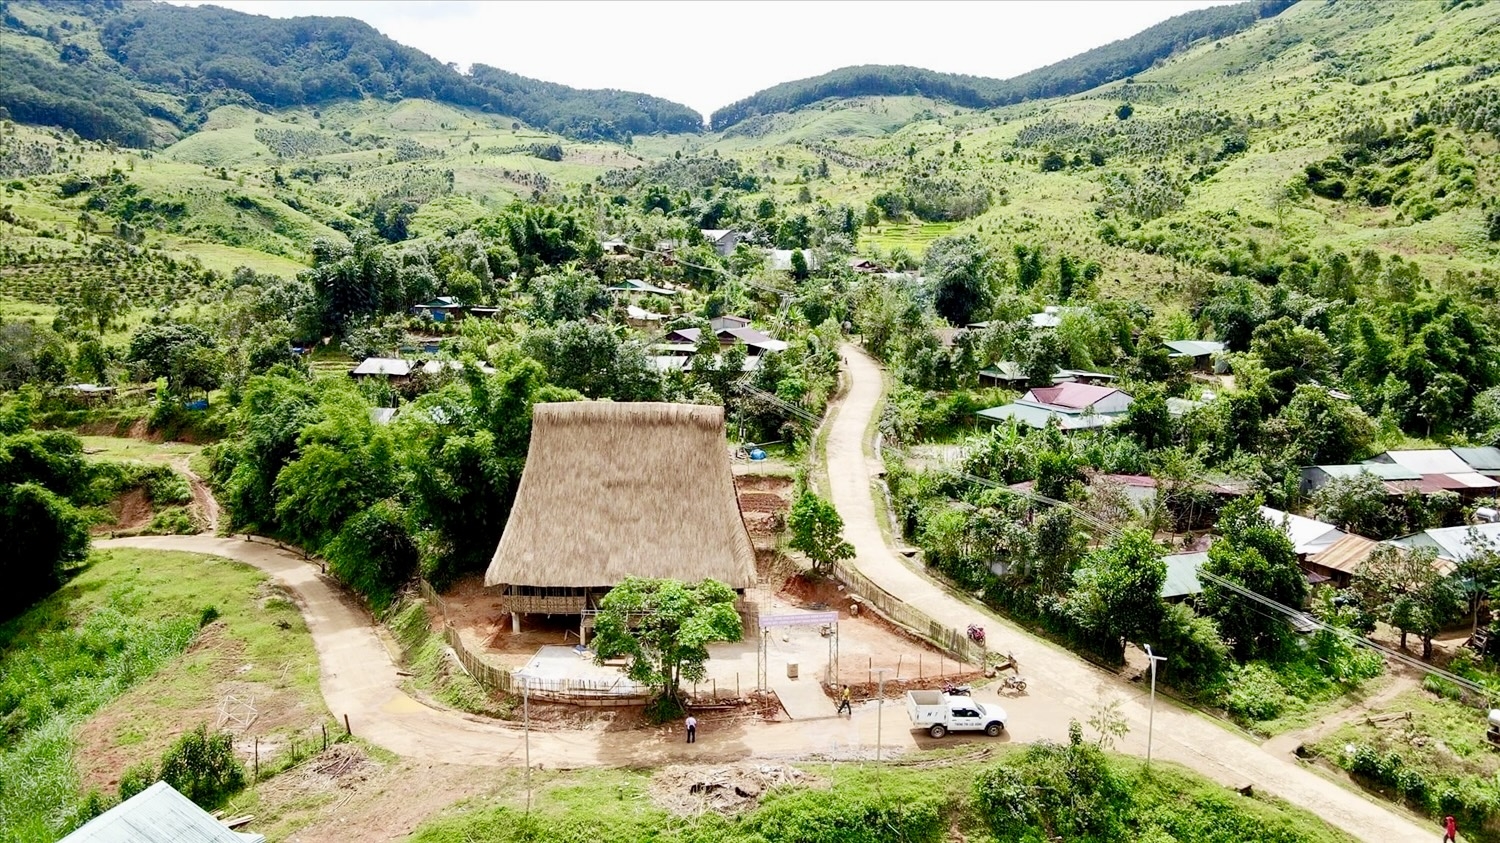 Nhờ phát huy tinh thần đoàn kết mà diện mạo các thôn, làng đồng bào DTTS ở tỉnh Kon Tum đang từng ngày đổi mới